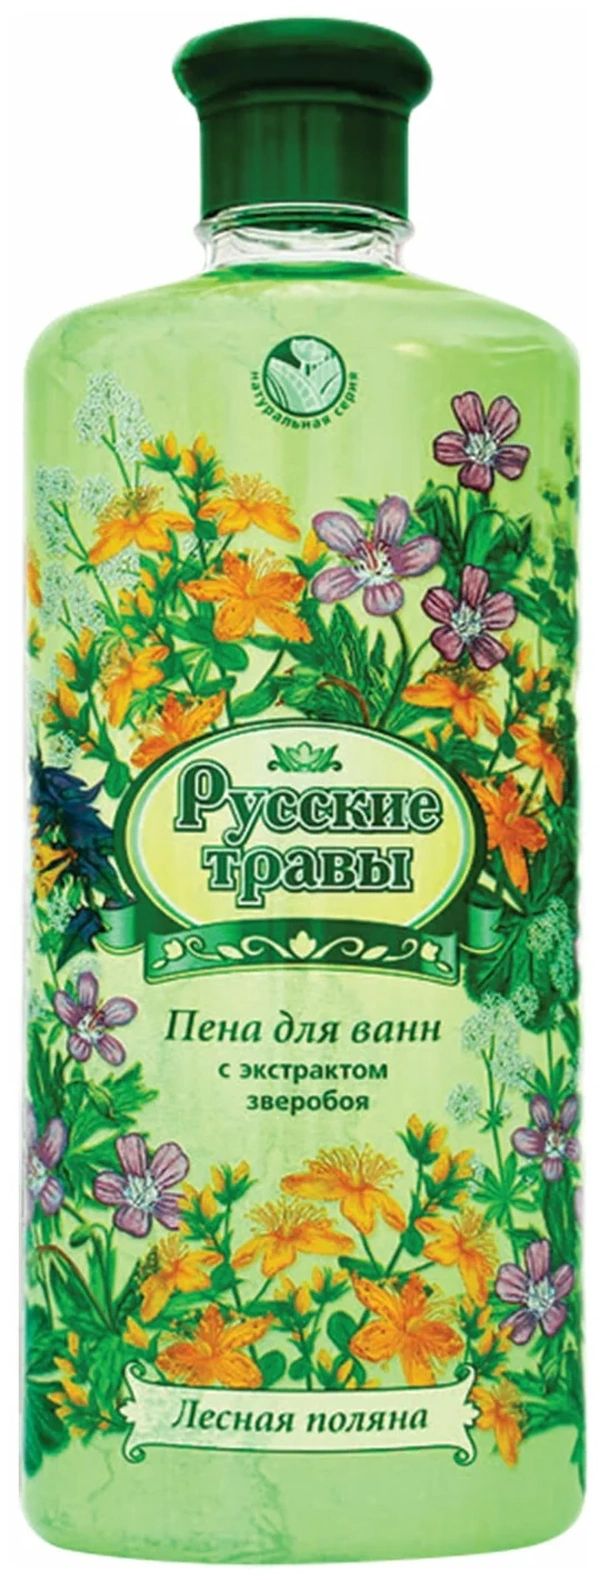 русские травы пена для ванн лесная поляна 500 0 Пена для ванн Русские травы Лесная поляна 500 мл